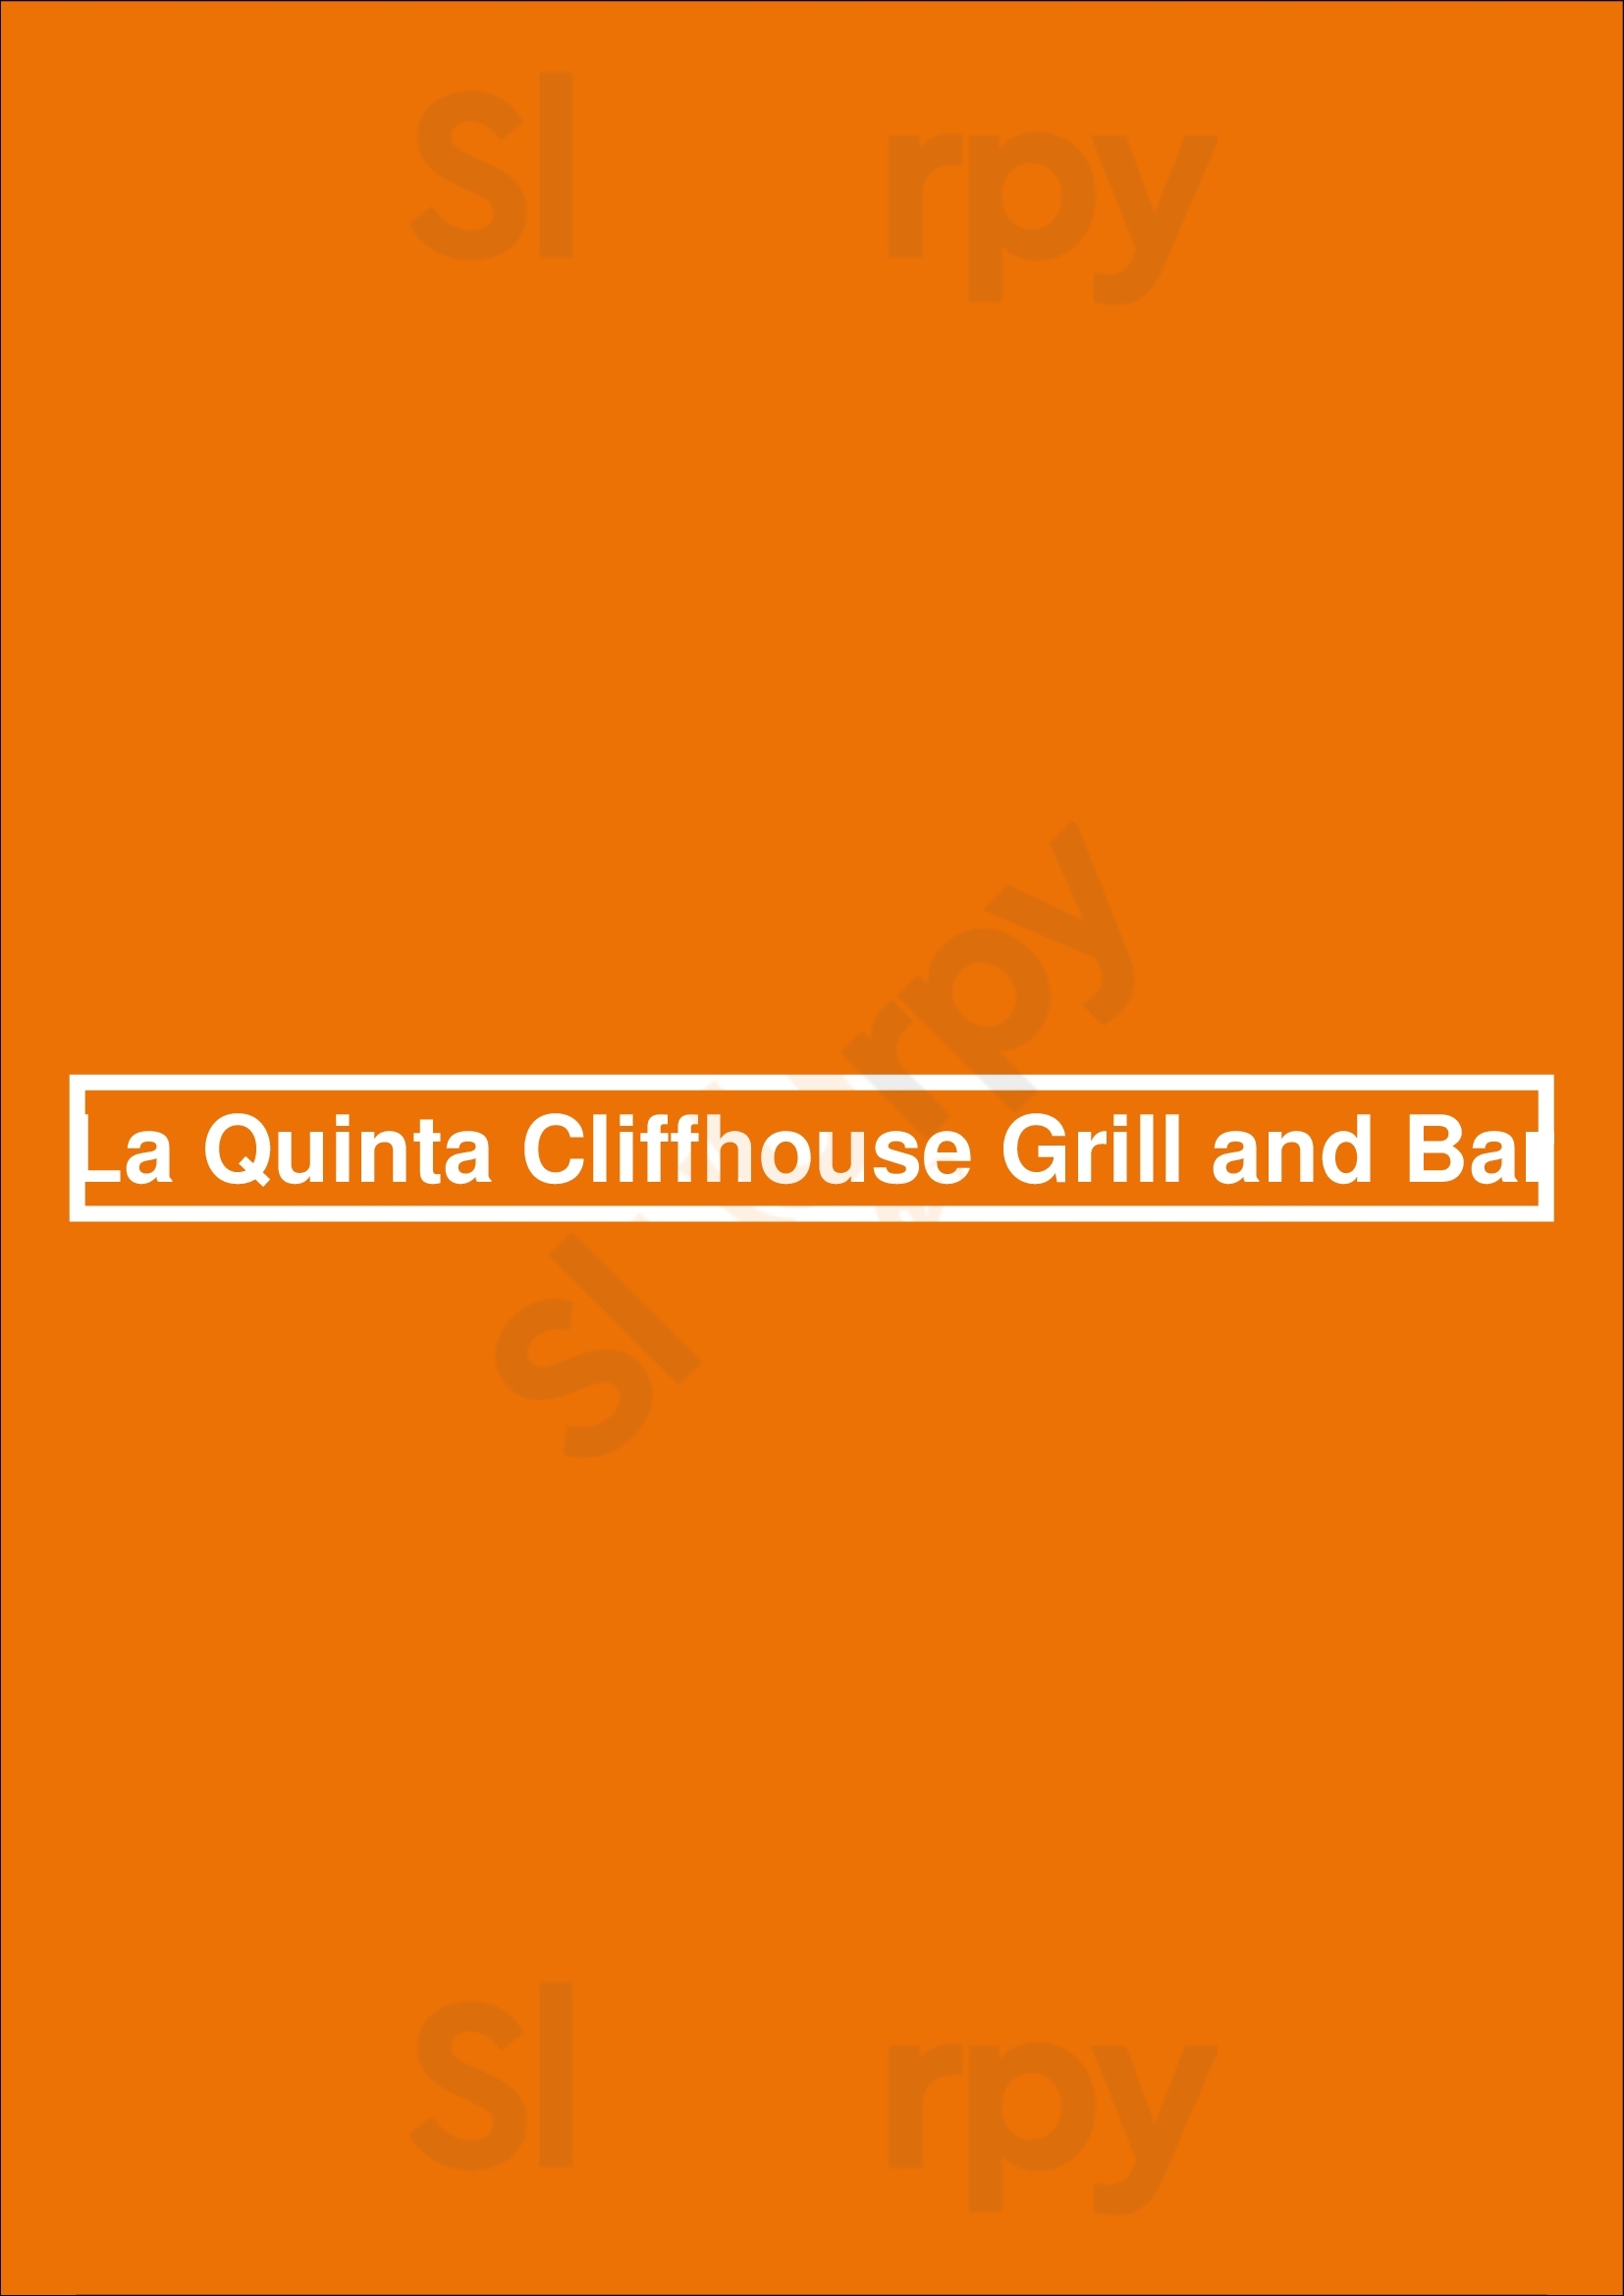 La Quinta Cliffhouse Grill And Bar La Quinta Menu - 1